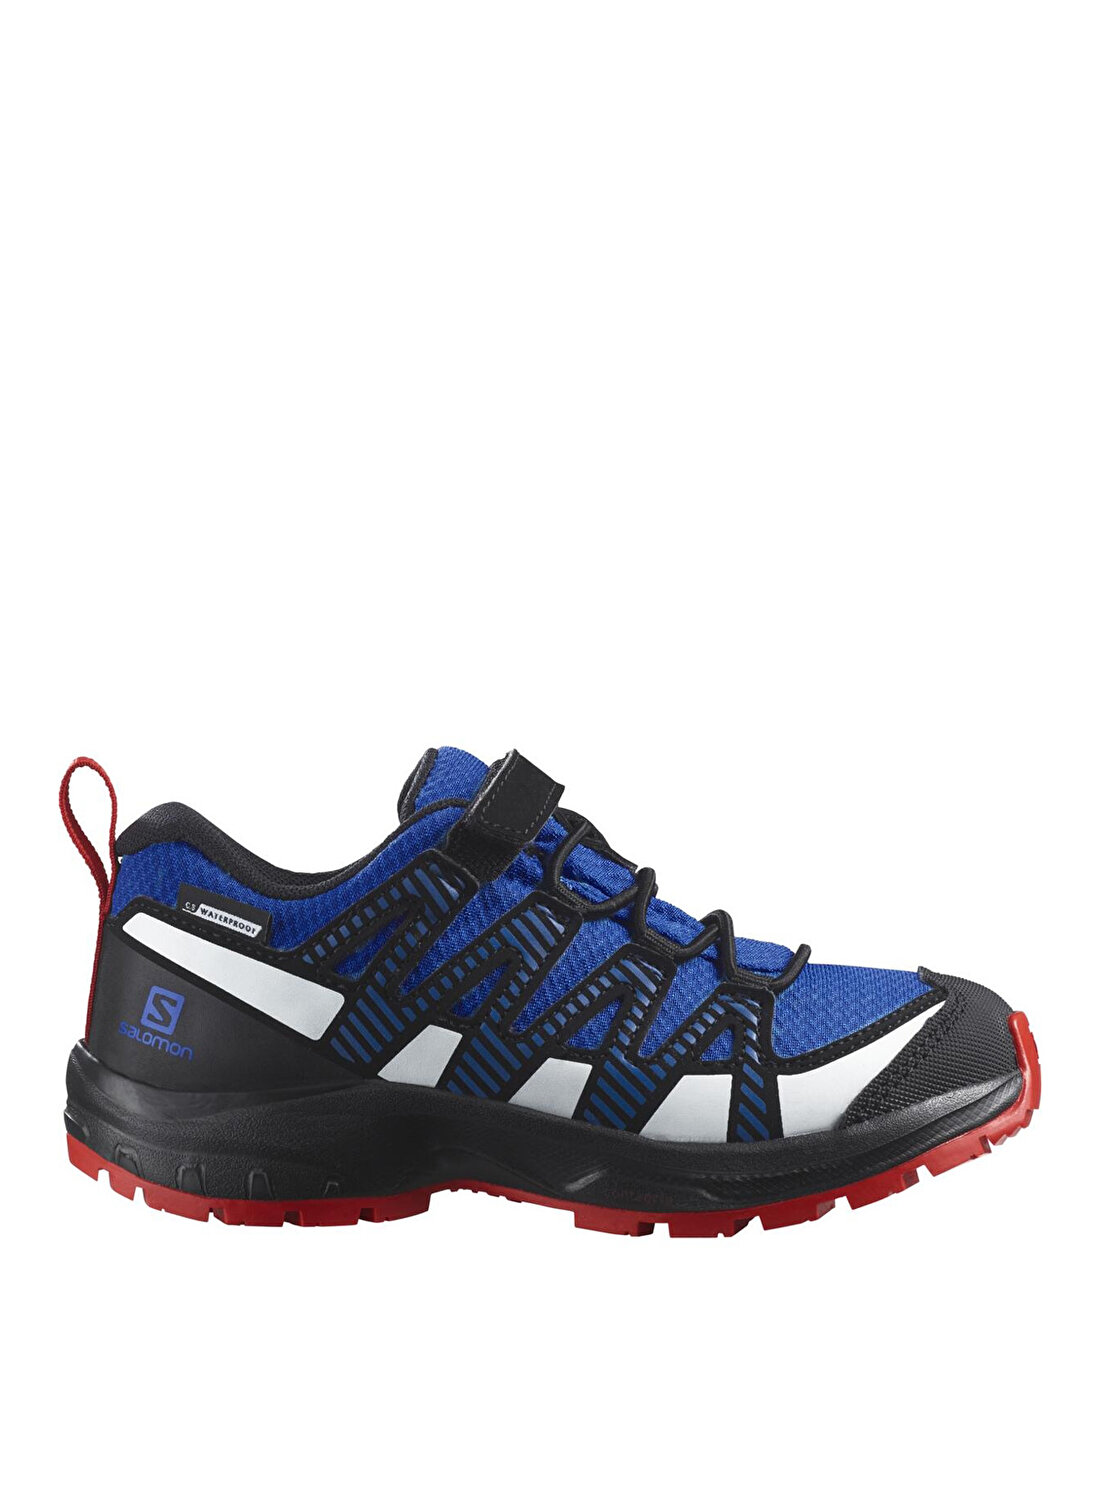 Salomon Lacivert - Siyah Erkek Çocuk Outdoor Ayakkabısı L47126300 XA PRO V8 CSWP K 